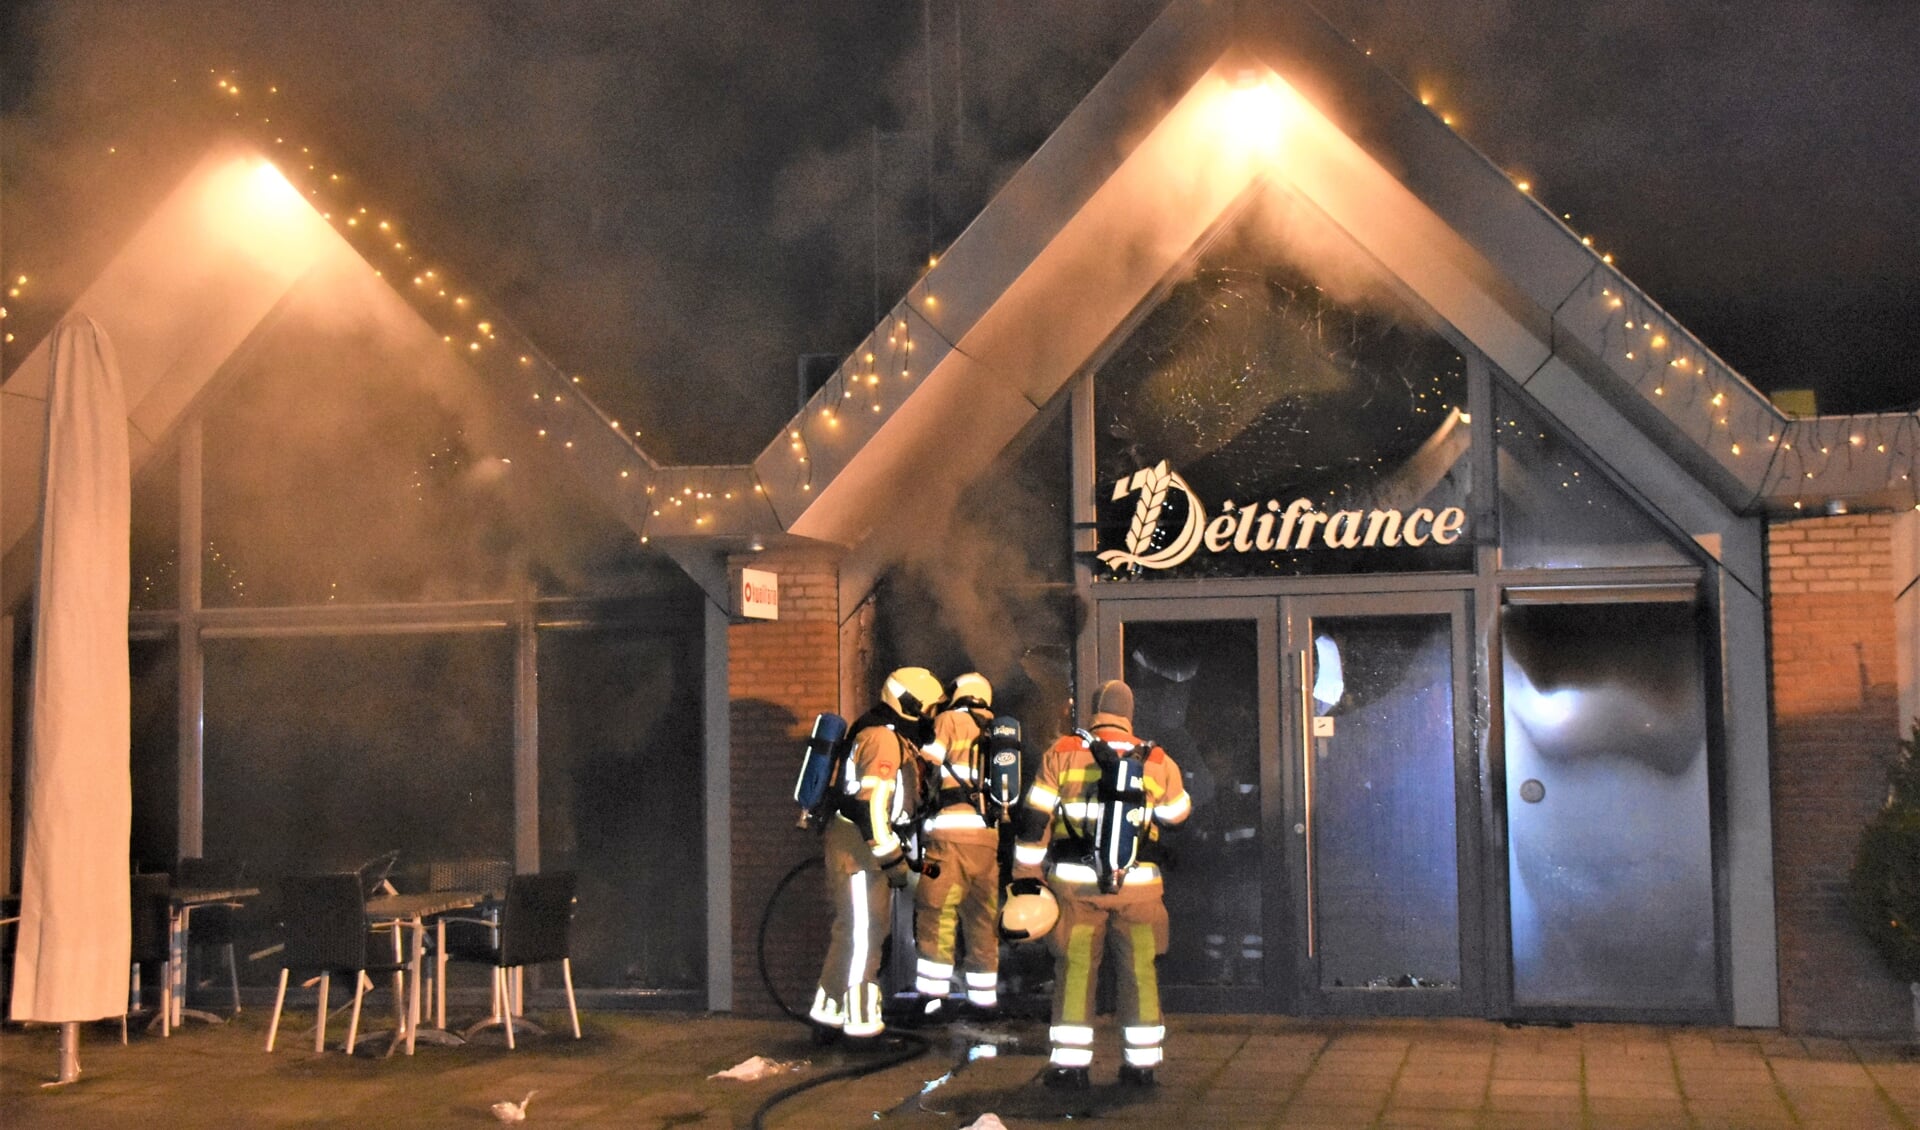 Het brandteam en politie doen onderzoek naar de oorzaak van de brand in Delifrance.